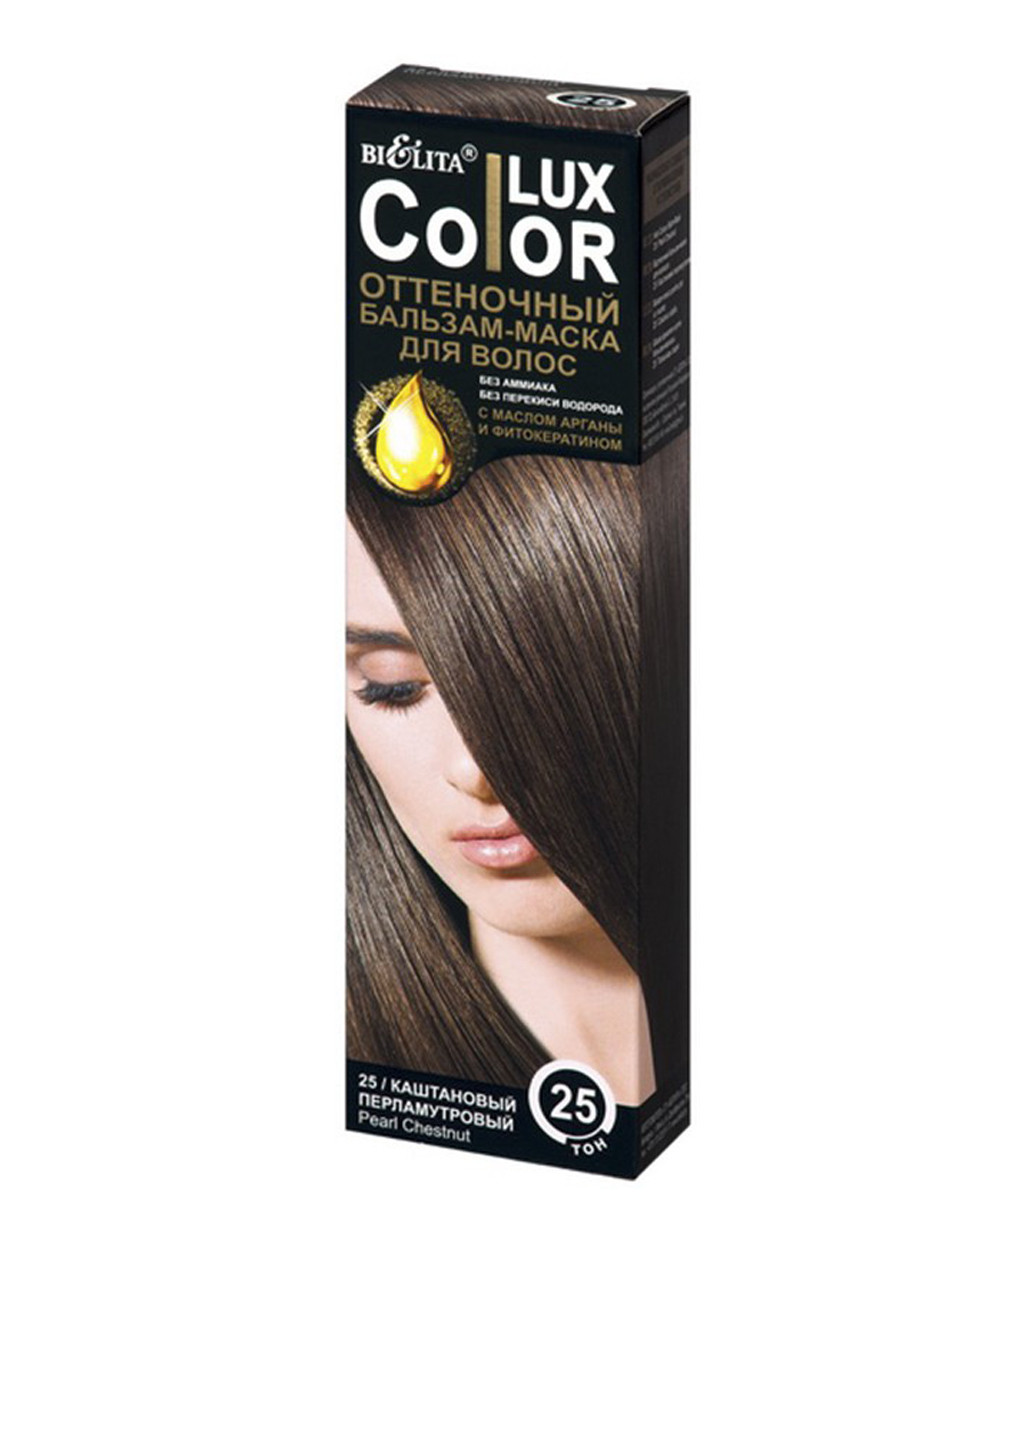 Бальзам оттеночный для волос Color LUX Тон 25 (каштановый перламутровый), 100 мл Bielita (75296555)